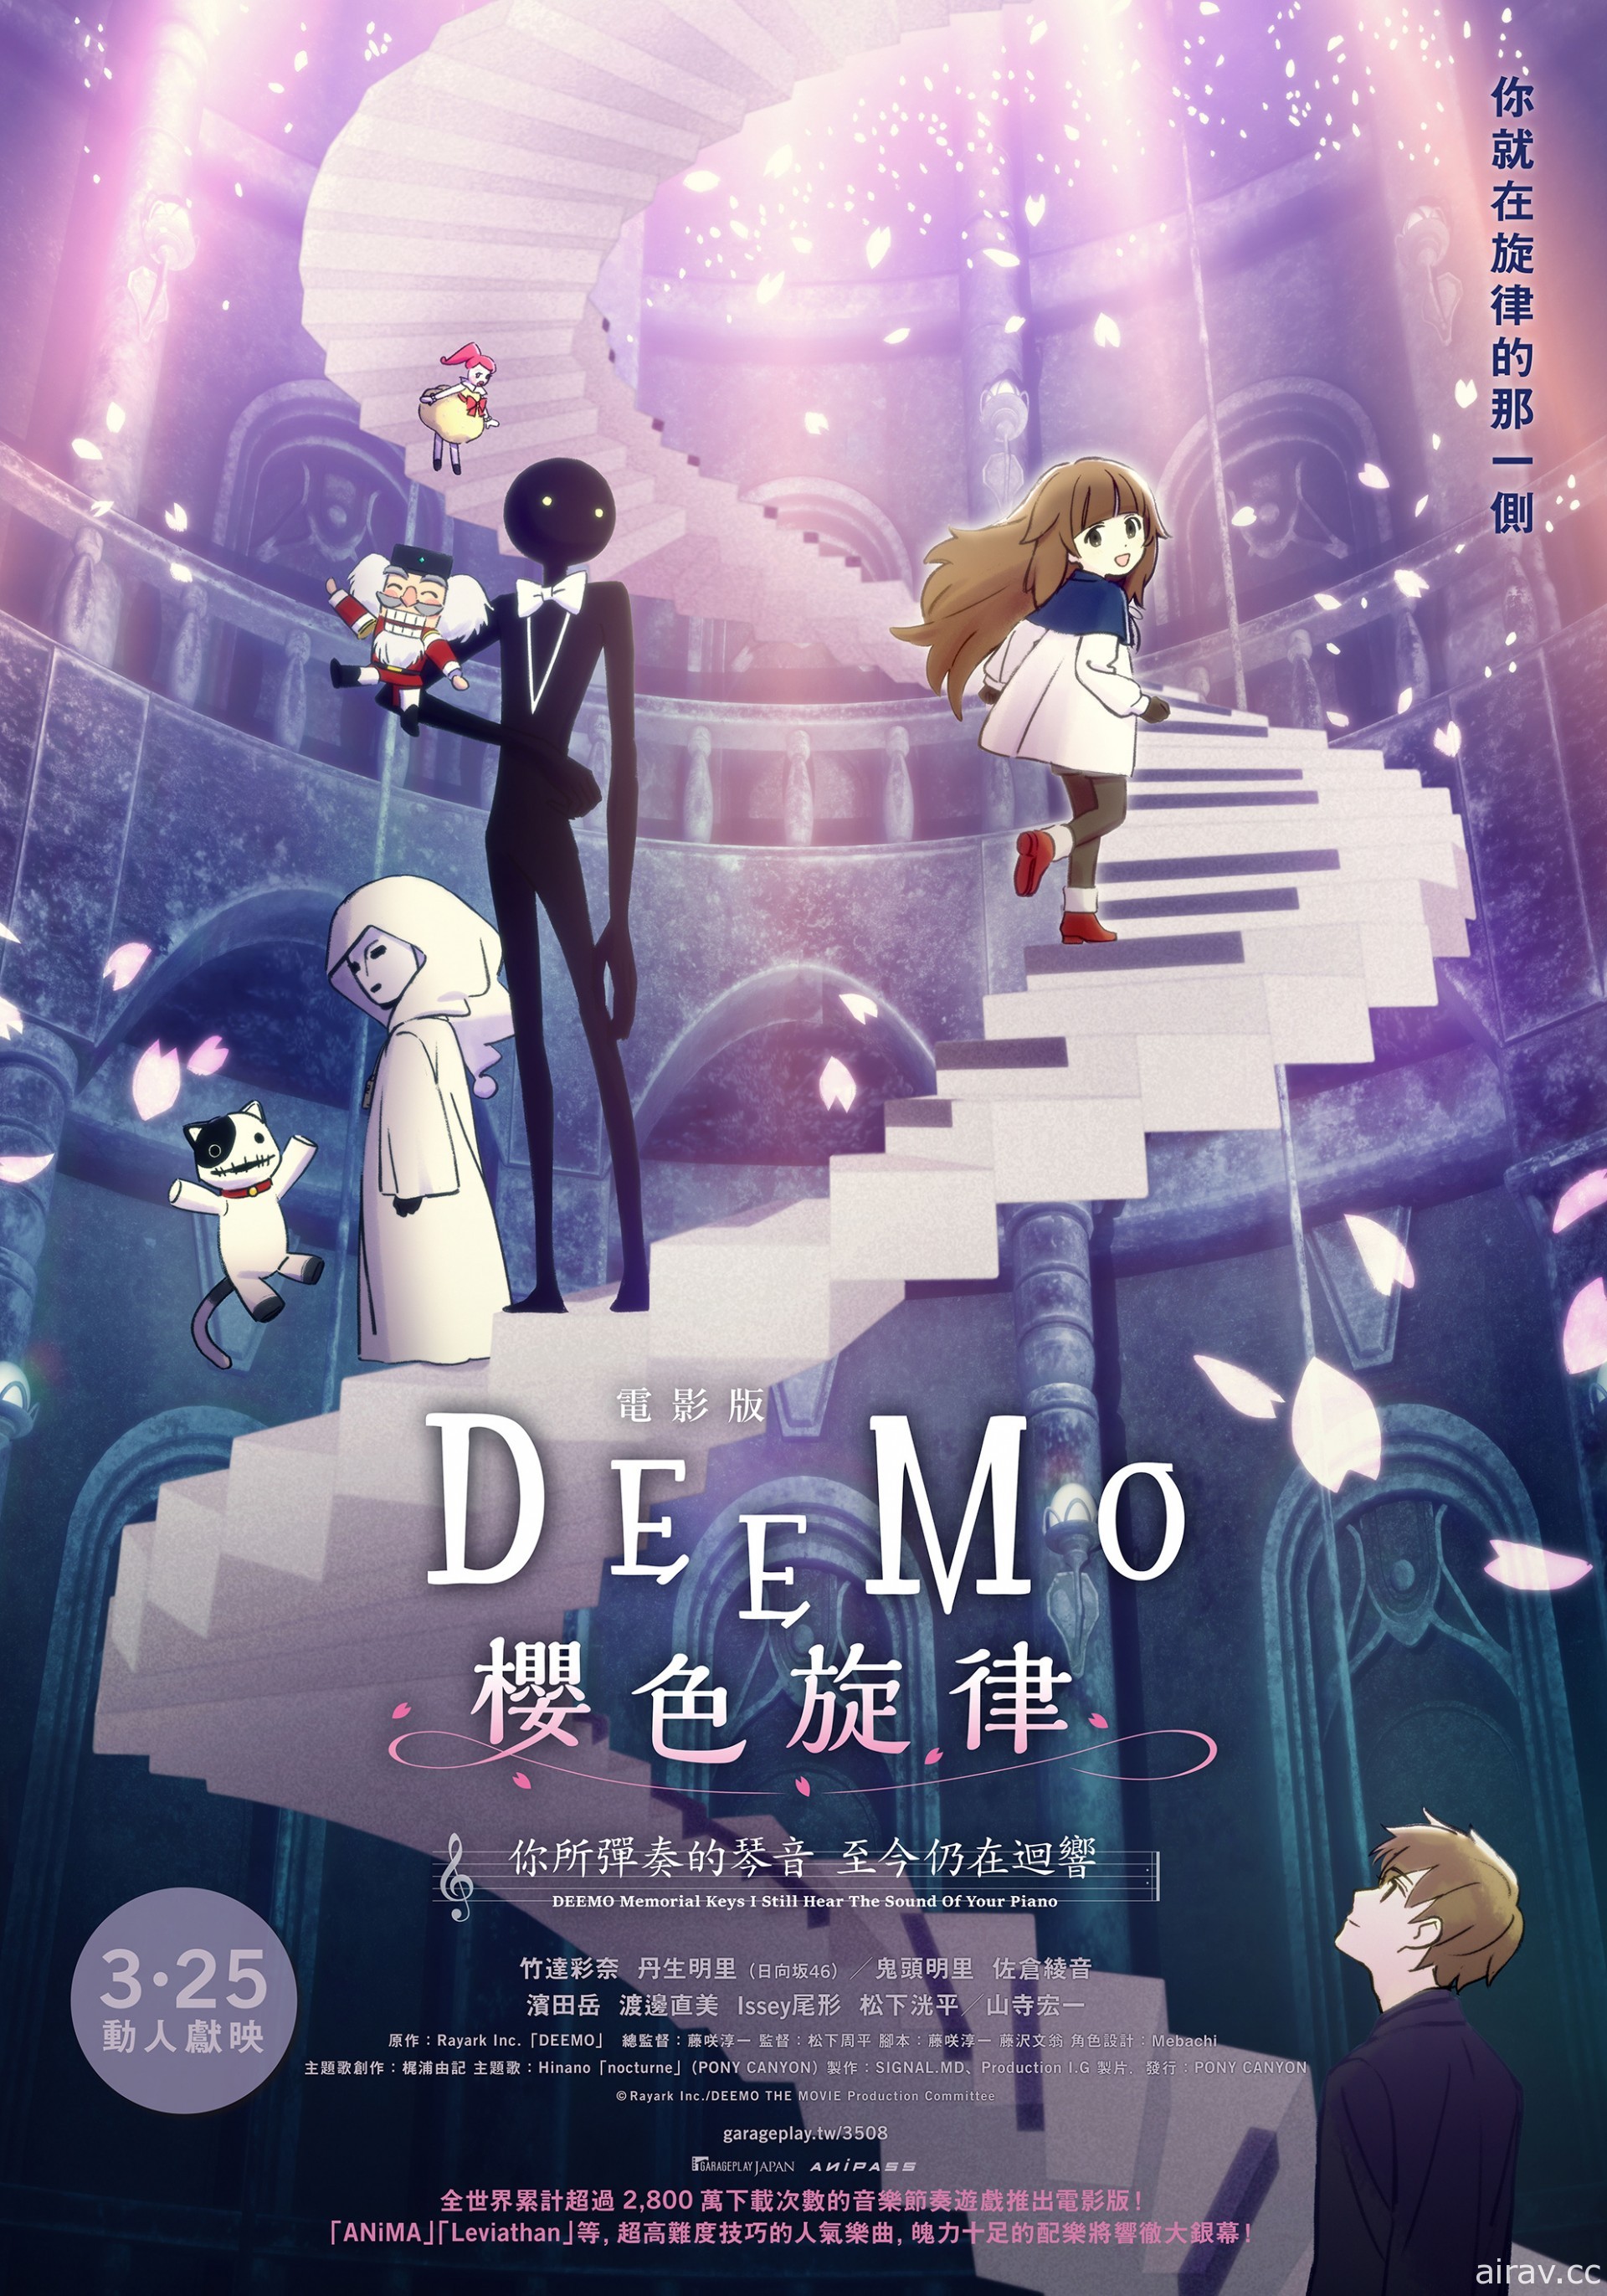 《电影版 DEEMO 樱色旋律》本周上映 周末将办会员特别场